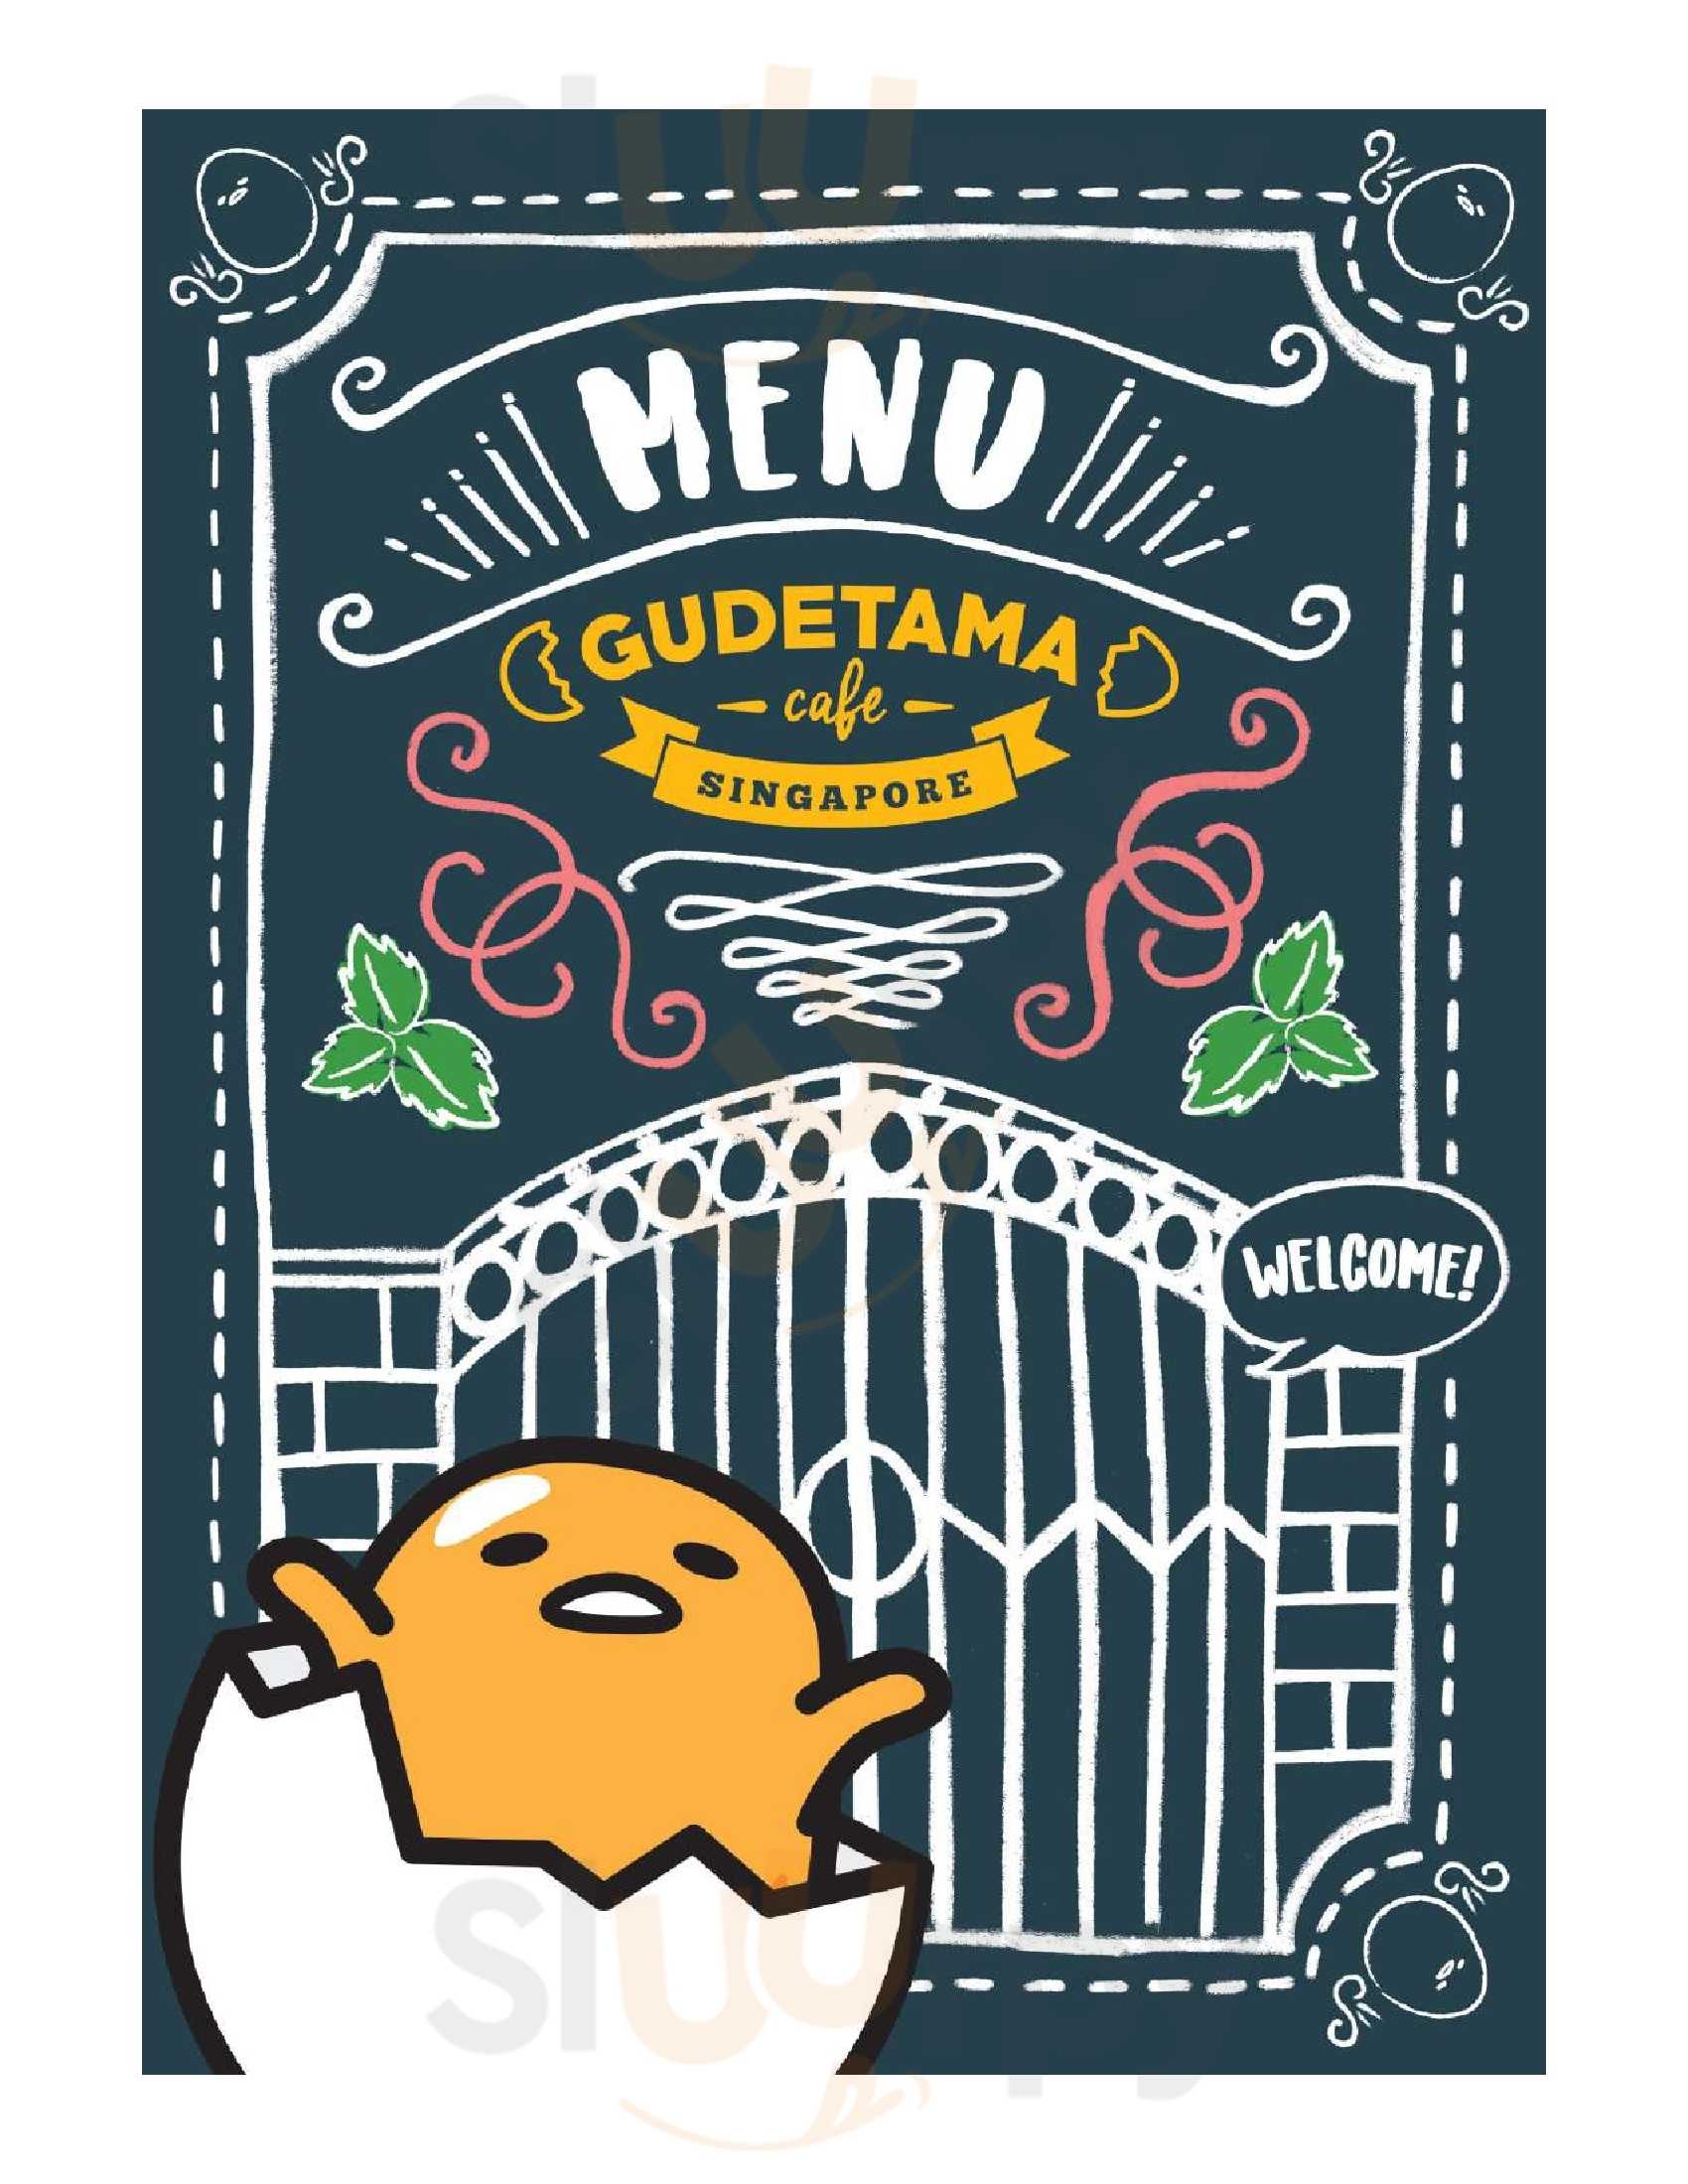 Gudetama Cafe Singapore Menu - 1